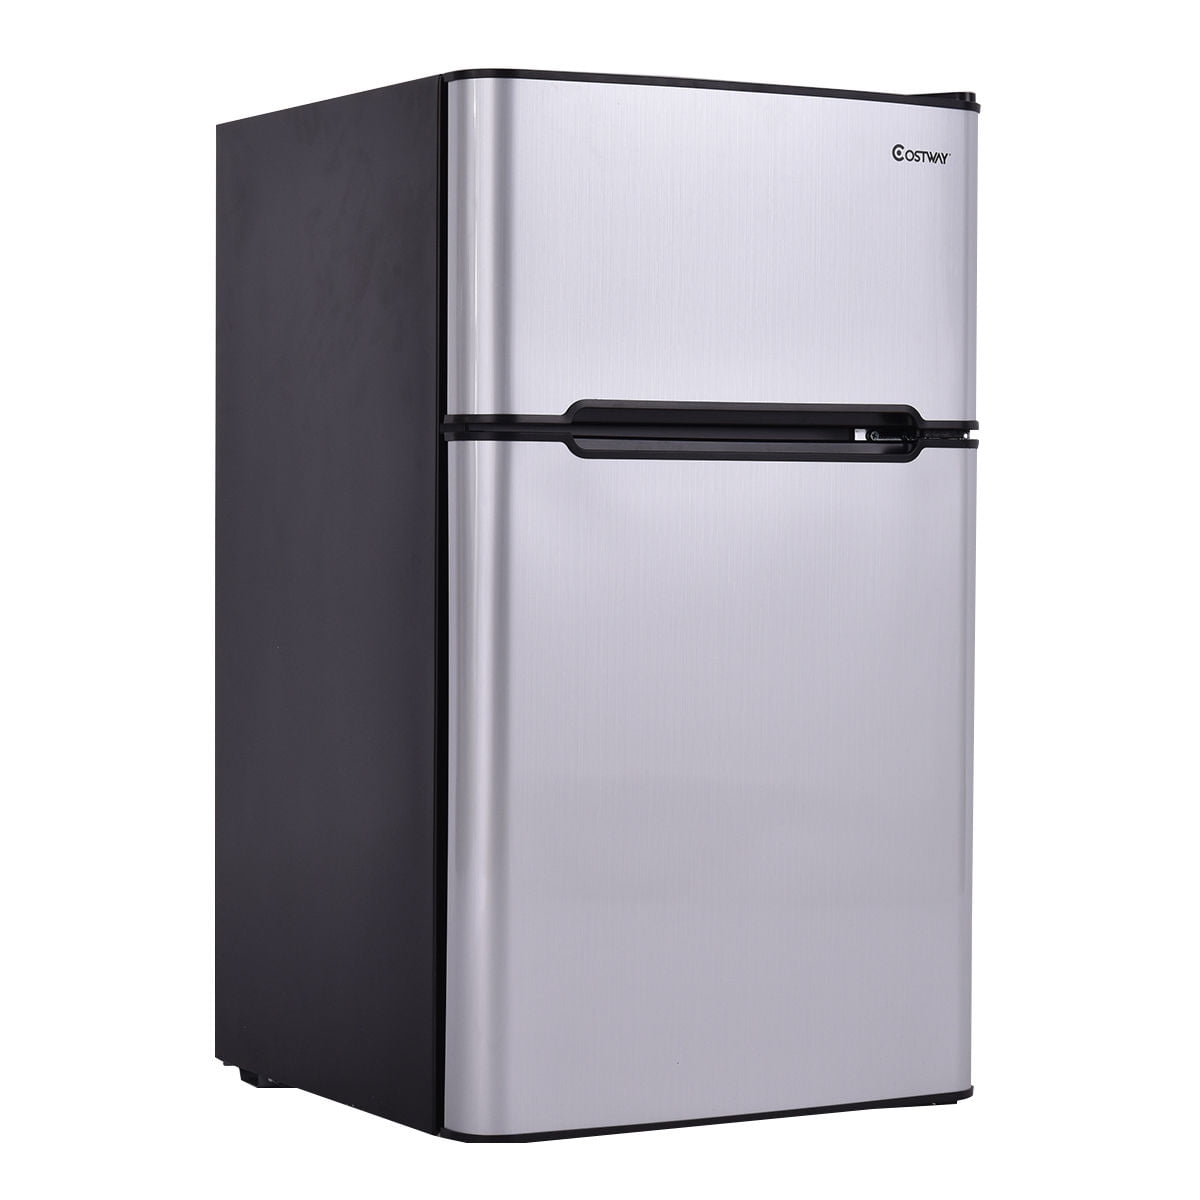 Mini fridge with freezer - specialsgulf